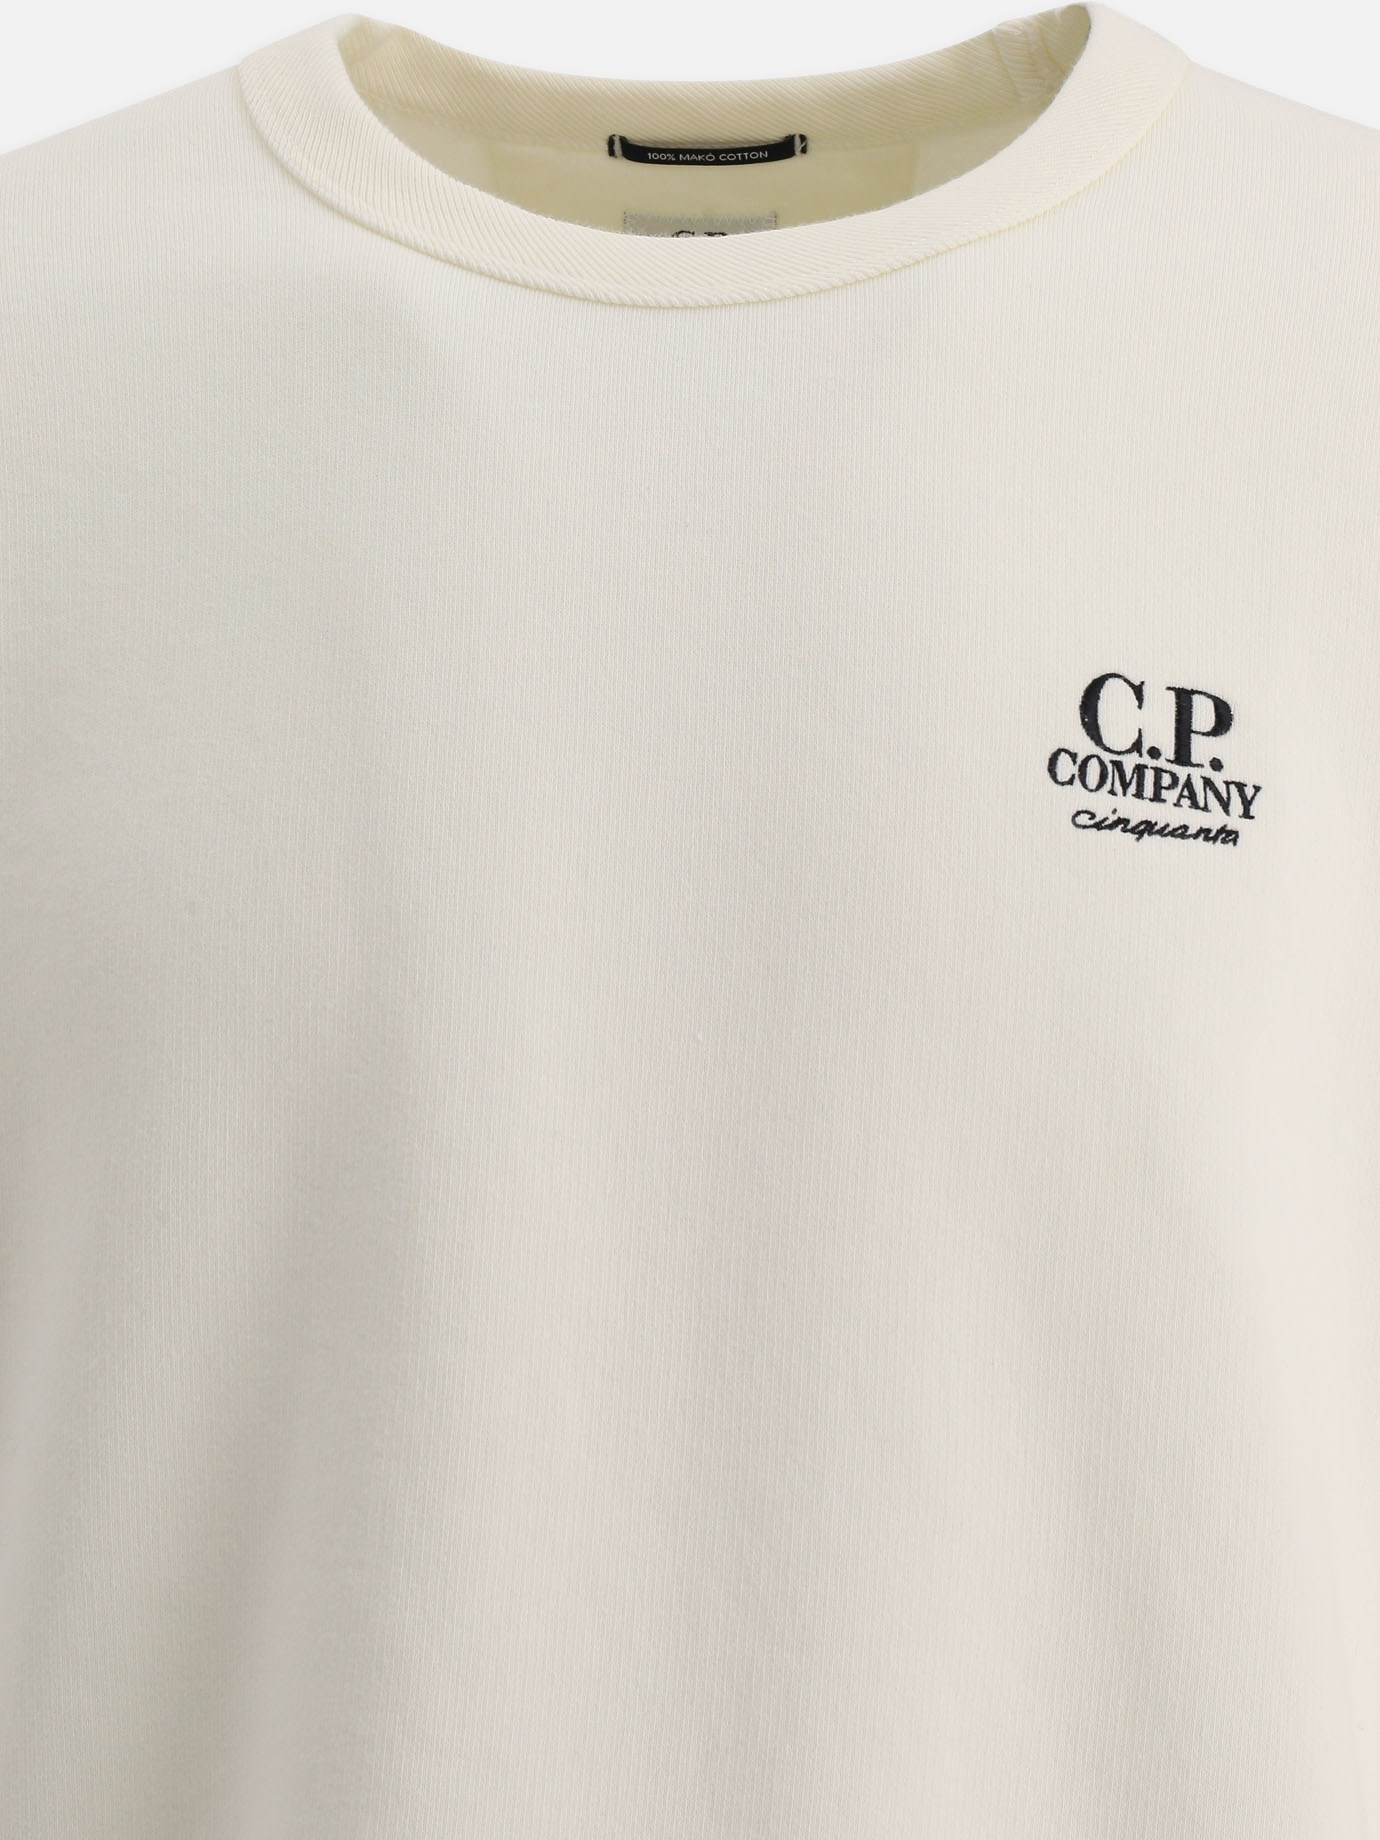  Cinquanta  sweatshirt by C.P. Company